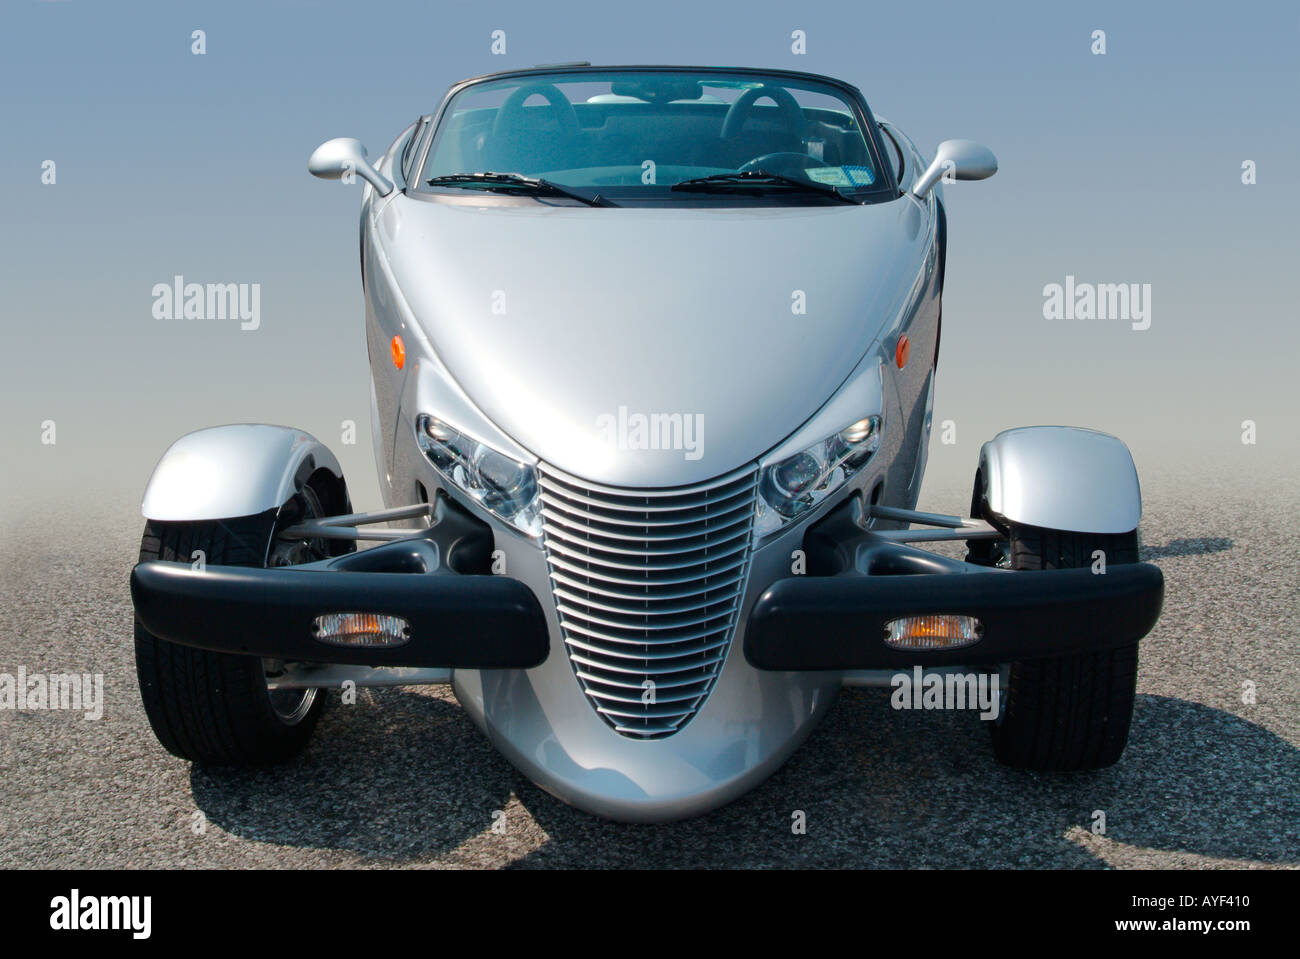 A silver Chrysler Plymouth Prowler hotrod. Stock Photo